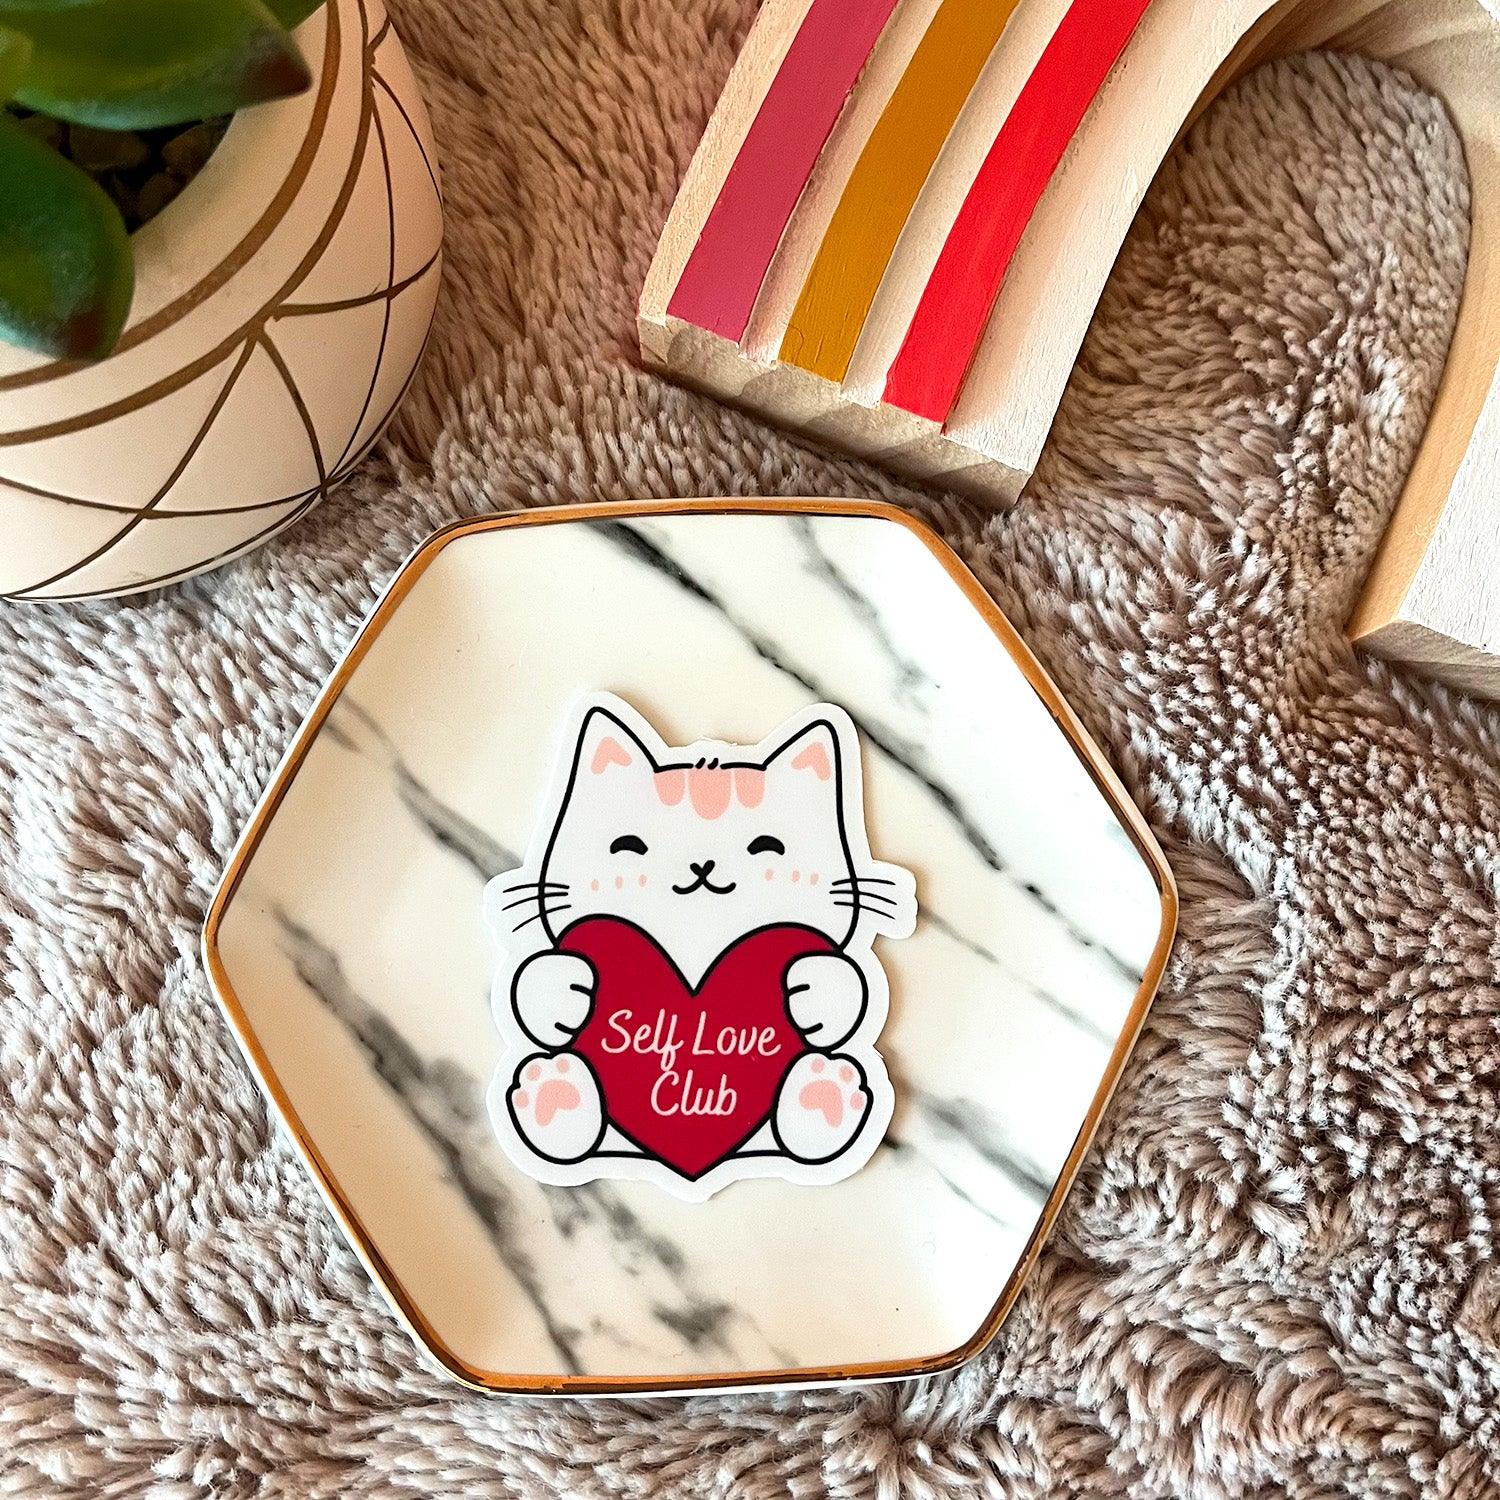 Self Love Club cat sticker shown on a dish